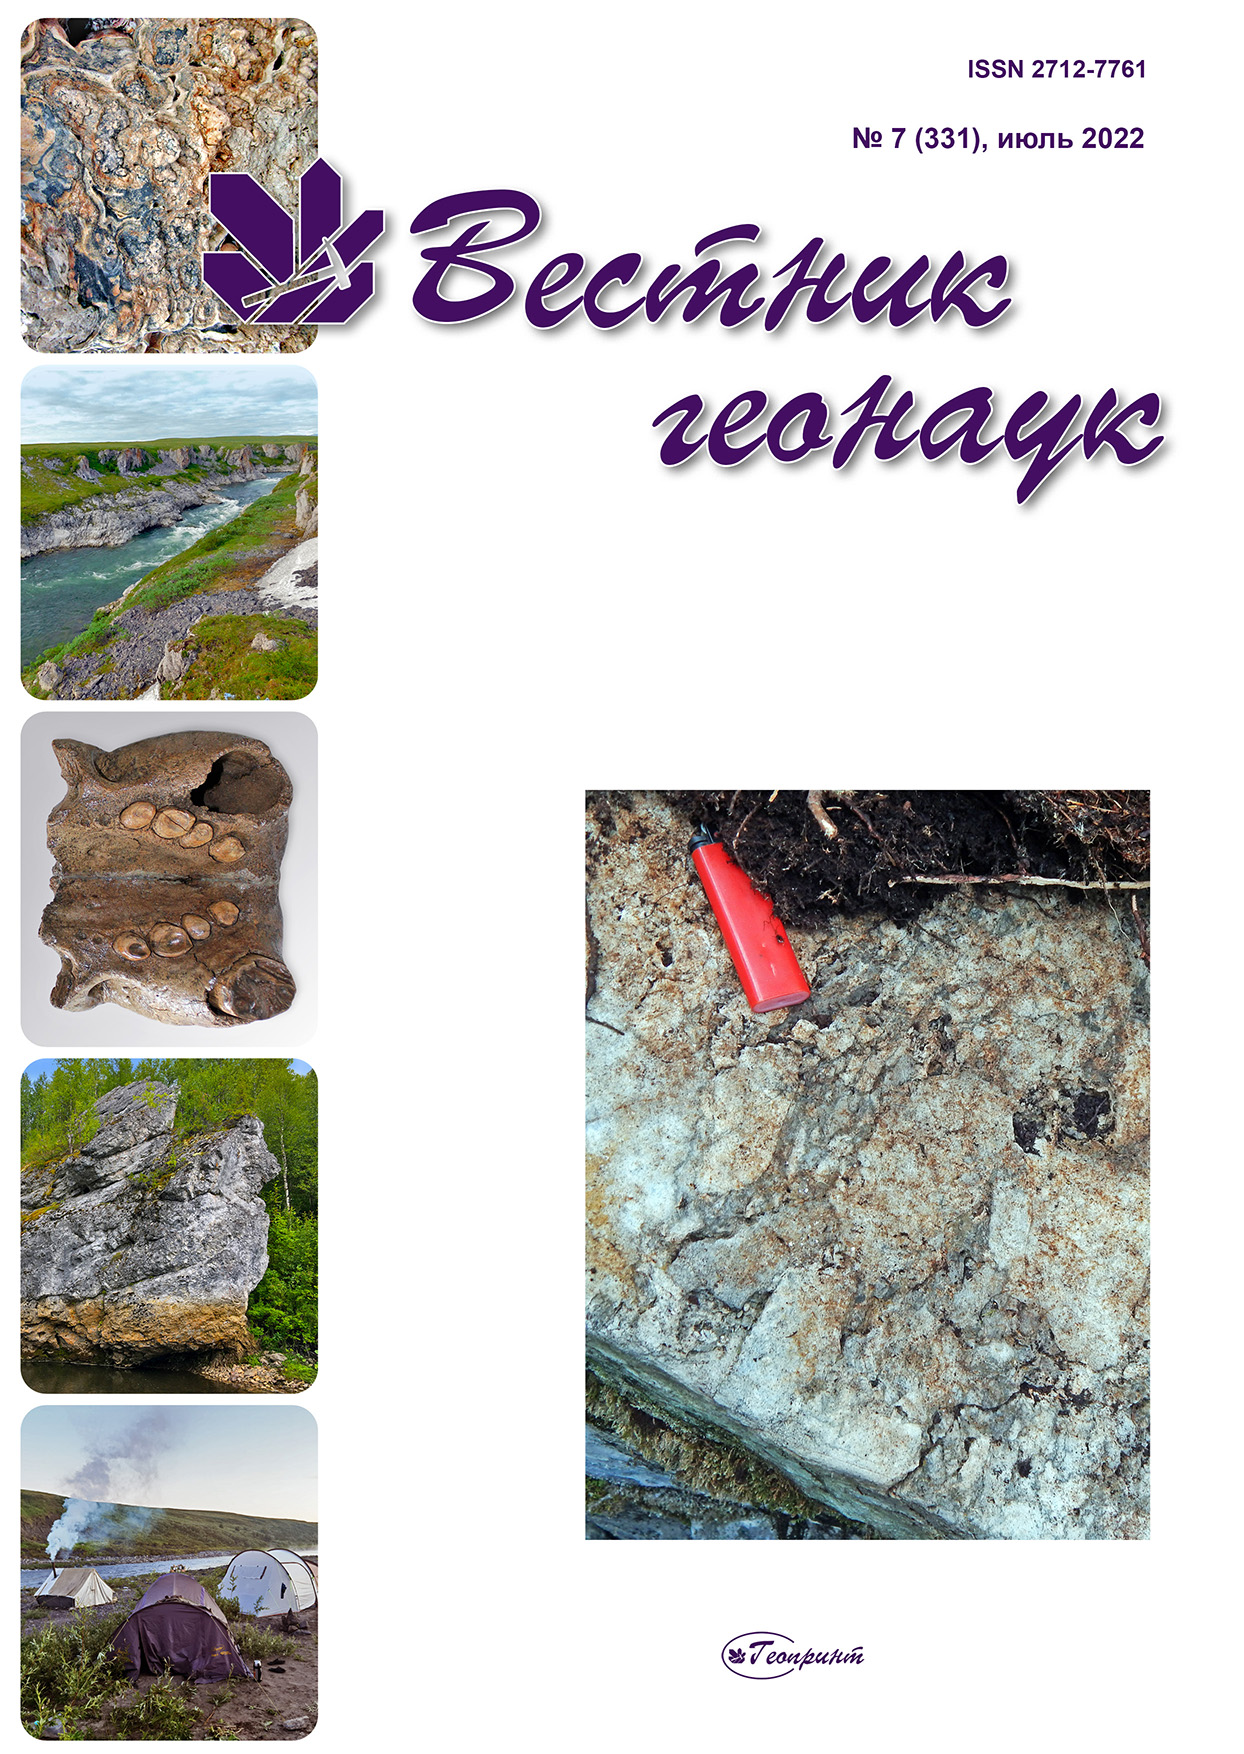             Происхождение цементолитов в верхнесилурийских лагунных отложениях Северного Урала
    